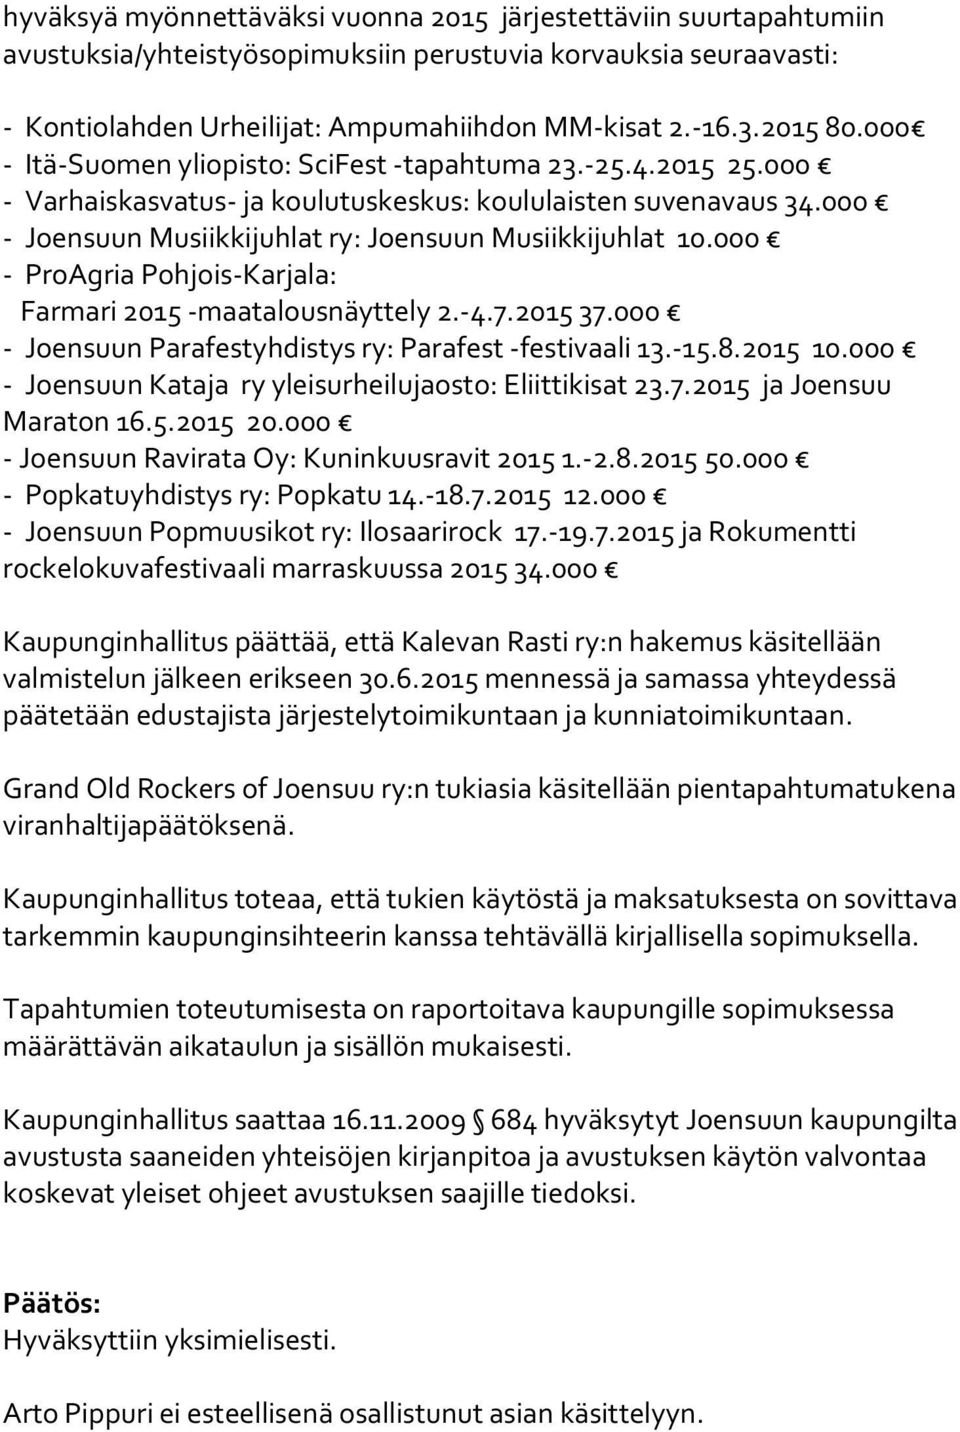 000 - Joensuun Musiikkijuhlat ry: Joensuun Musiikkijuhlat 10.000 - ProAgria Pohjois-Karjala: Farmari 2015 -maatalousnäyttely 2.-4.7.2015 37.000 - Joensuun Parafestyhdistys ry: Parafest -festivaali 13.